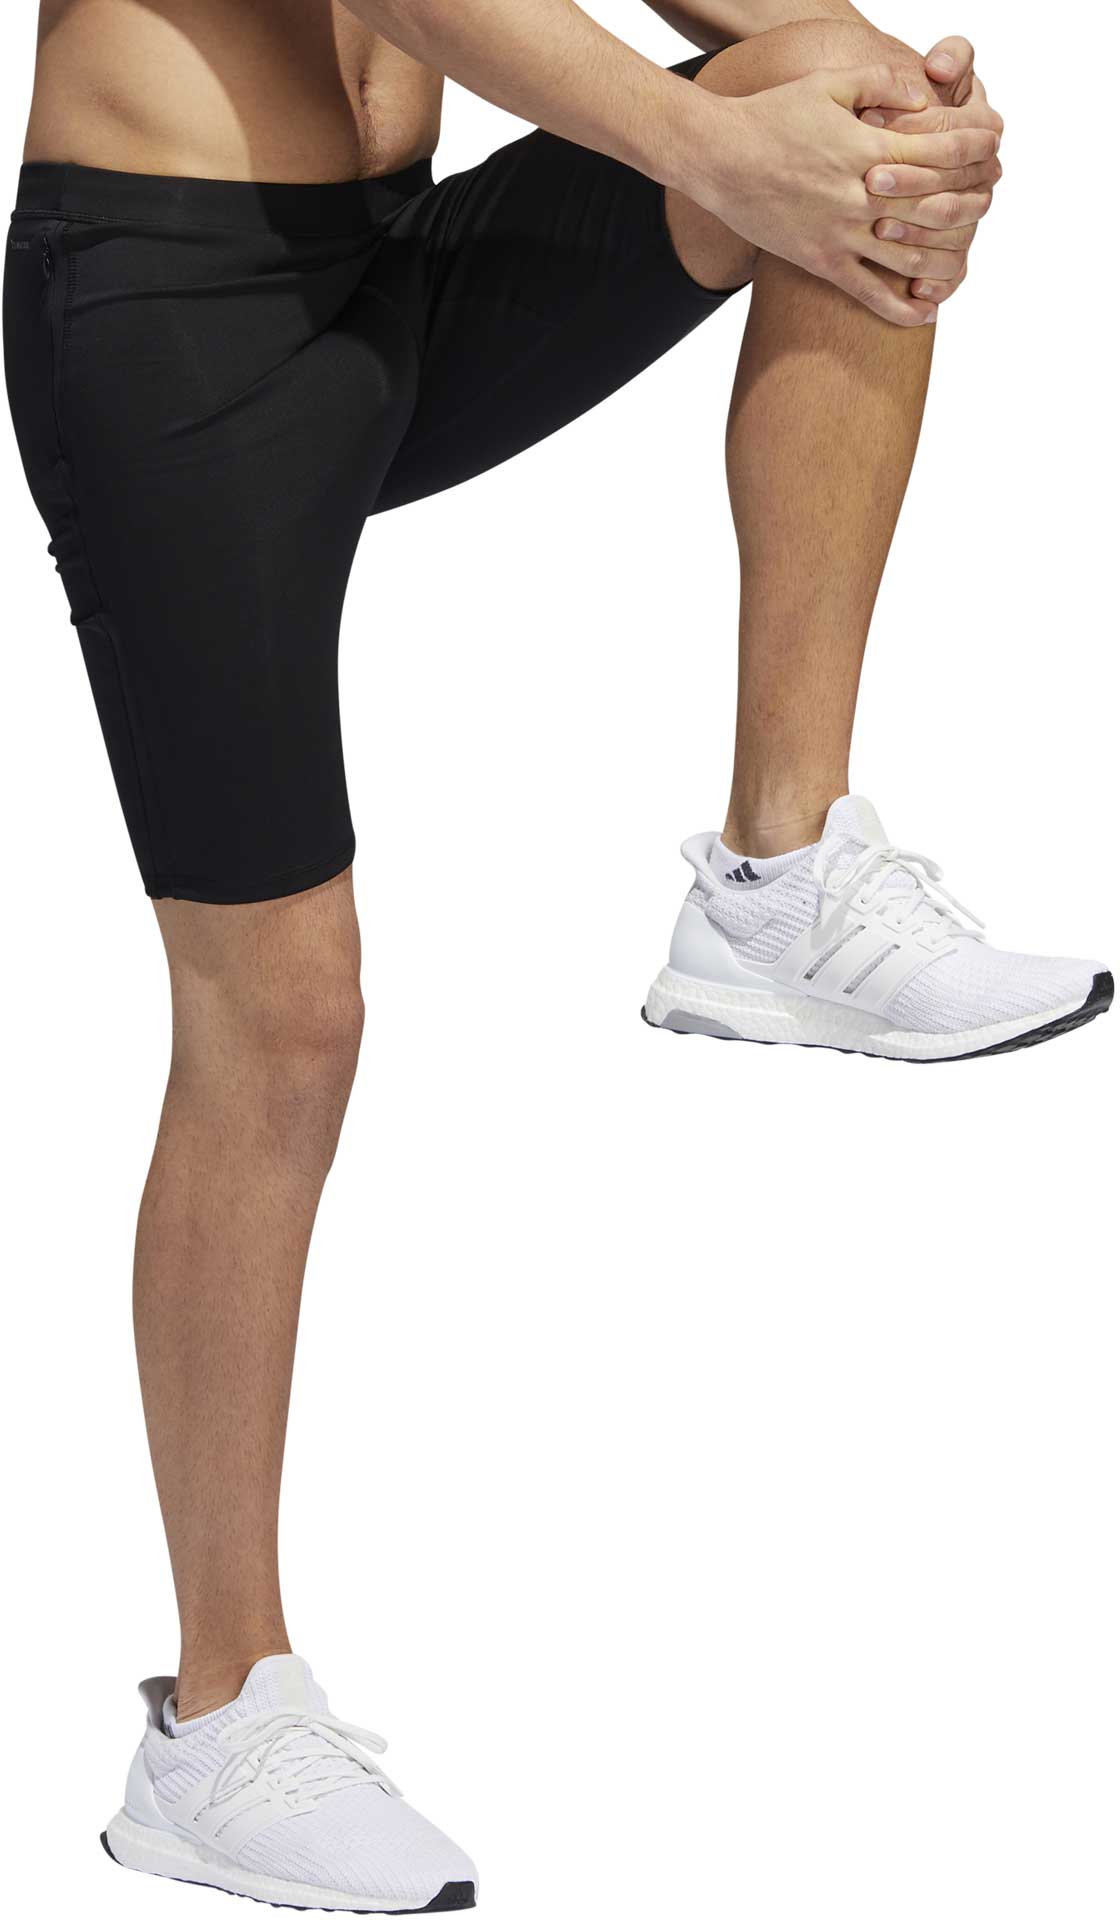 Men's elastic shorts